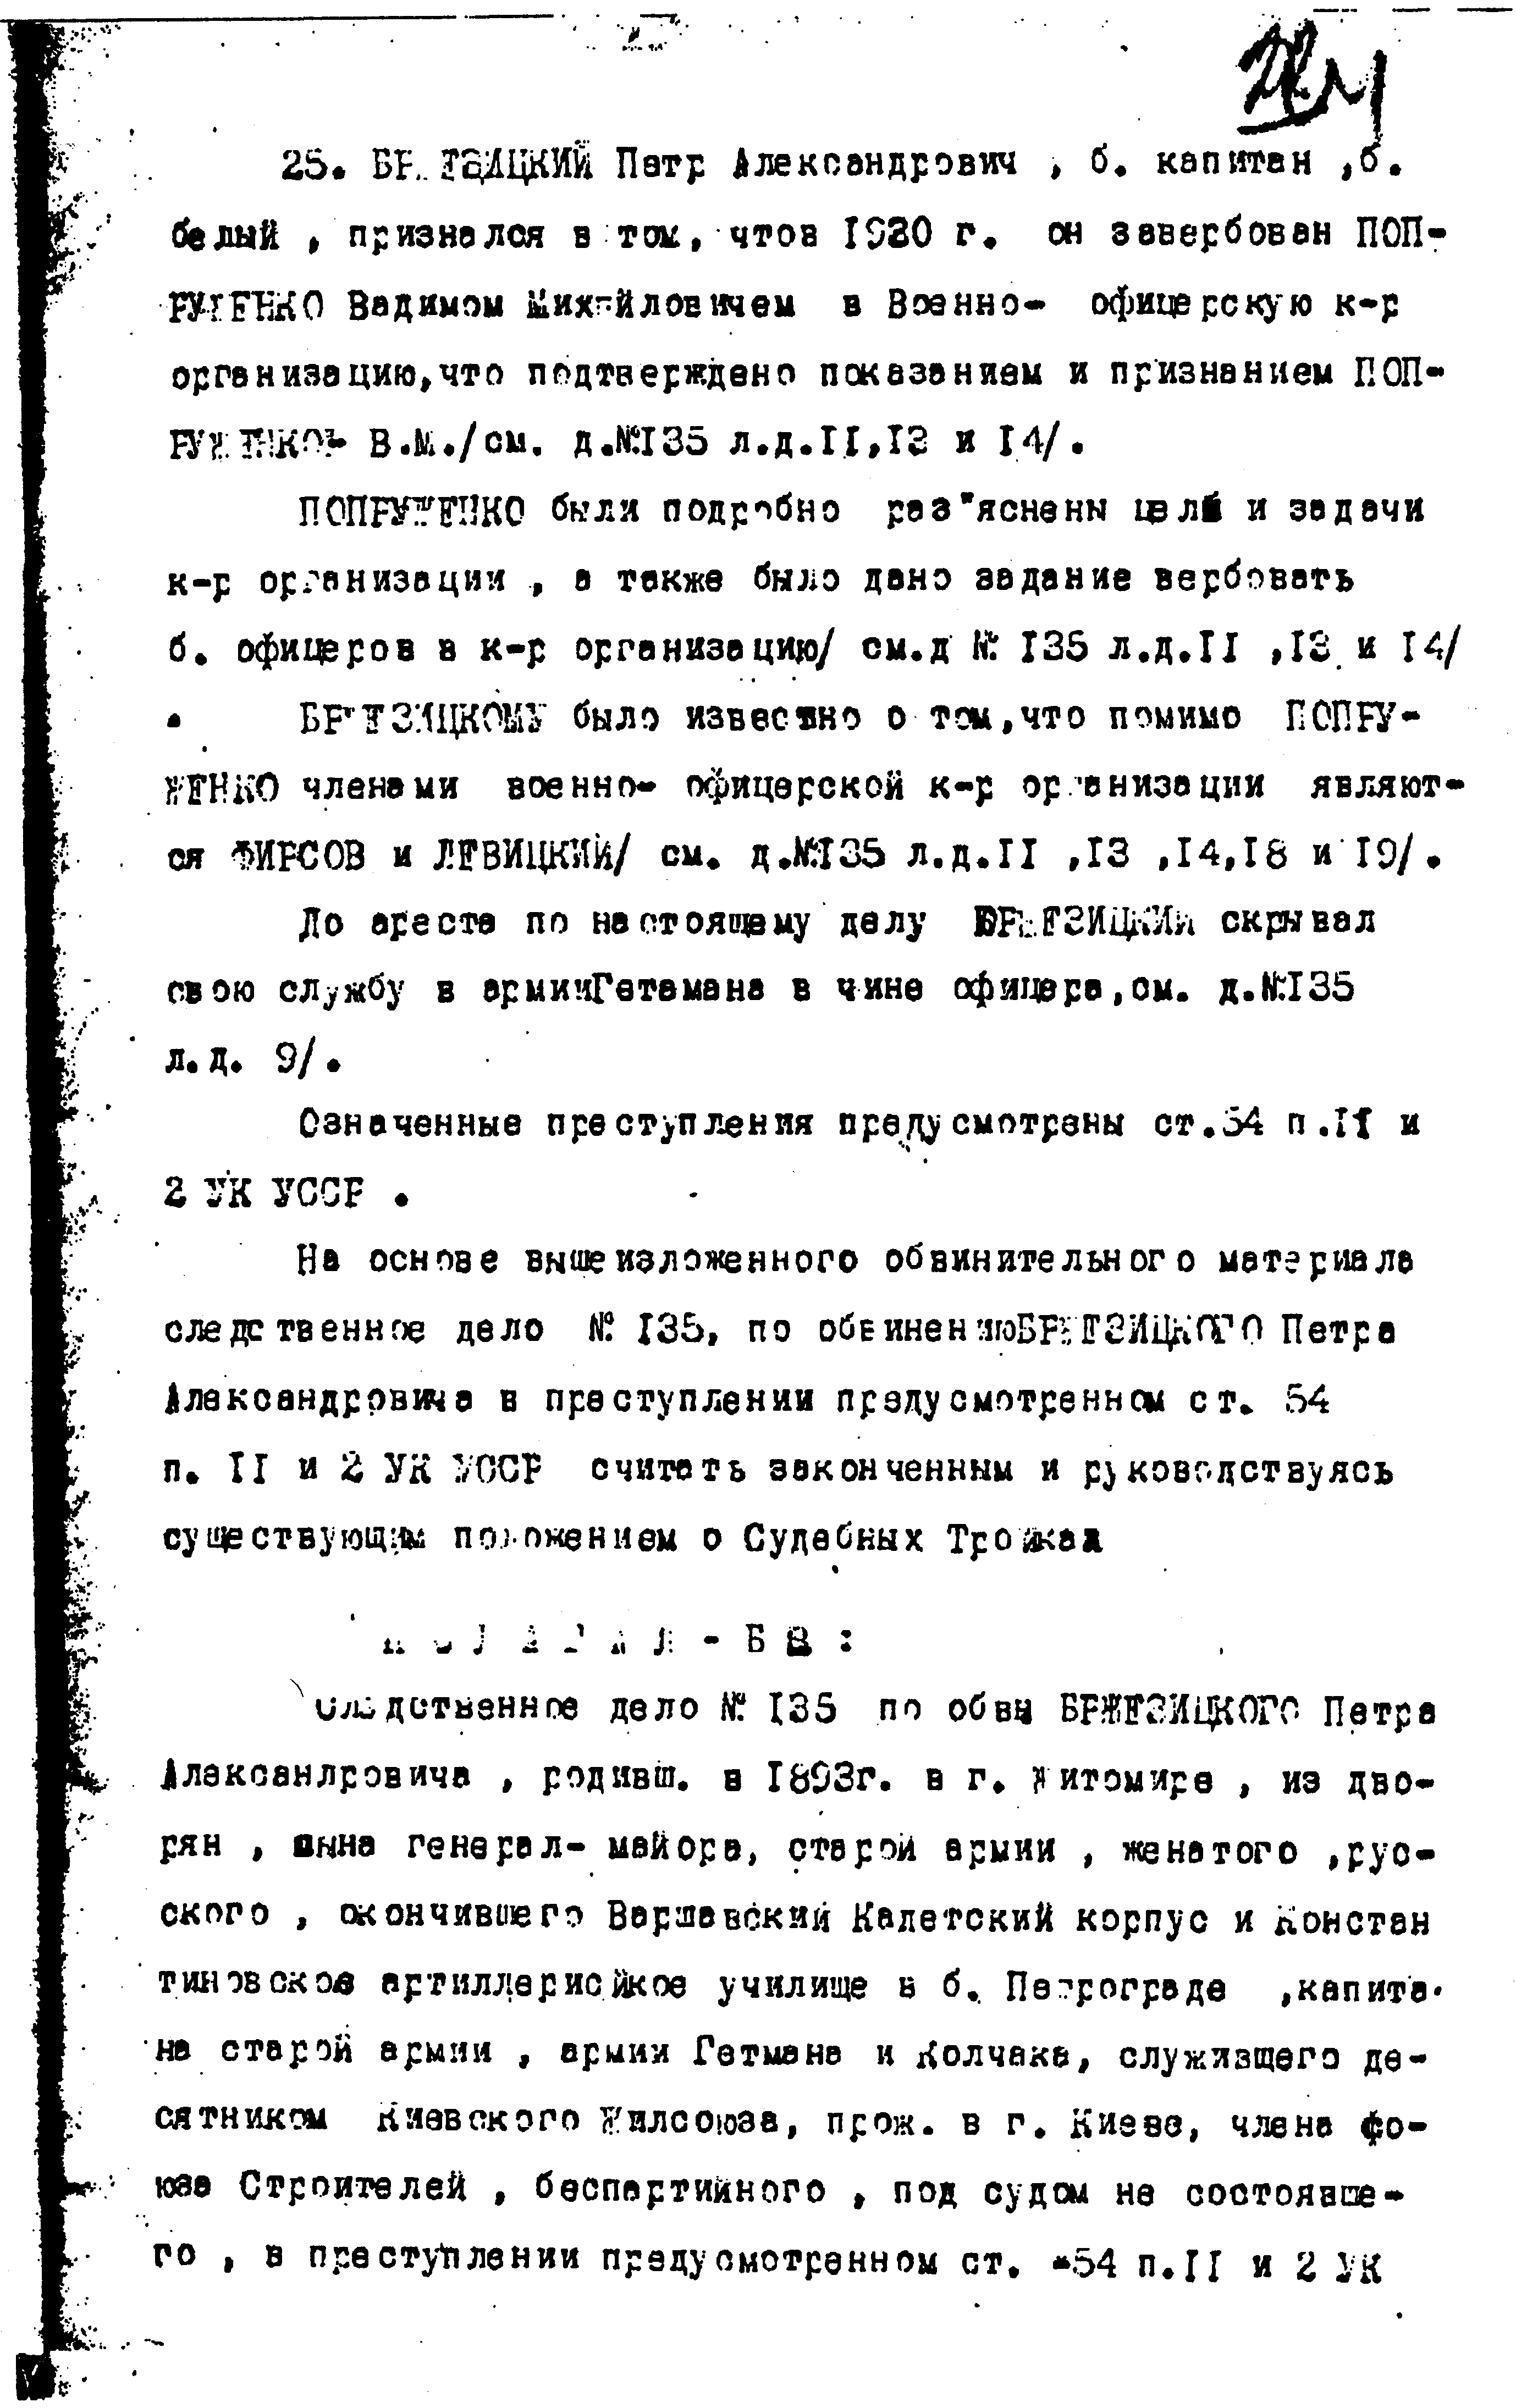 Документы к биографии П.А. Бржезицкого. Приговор по делу 1930 года